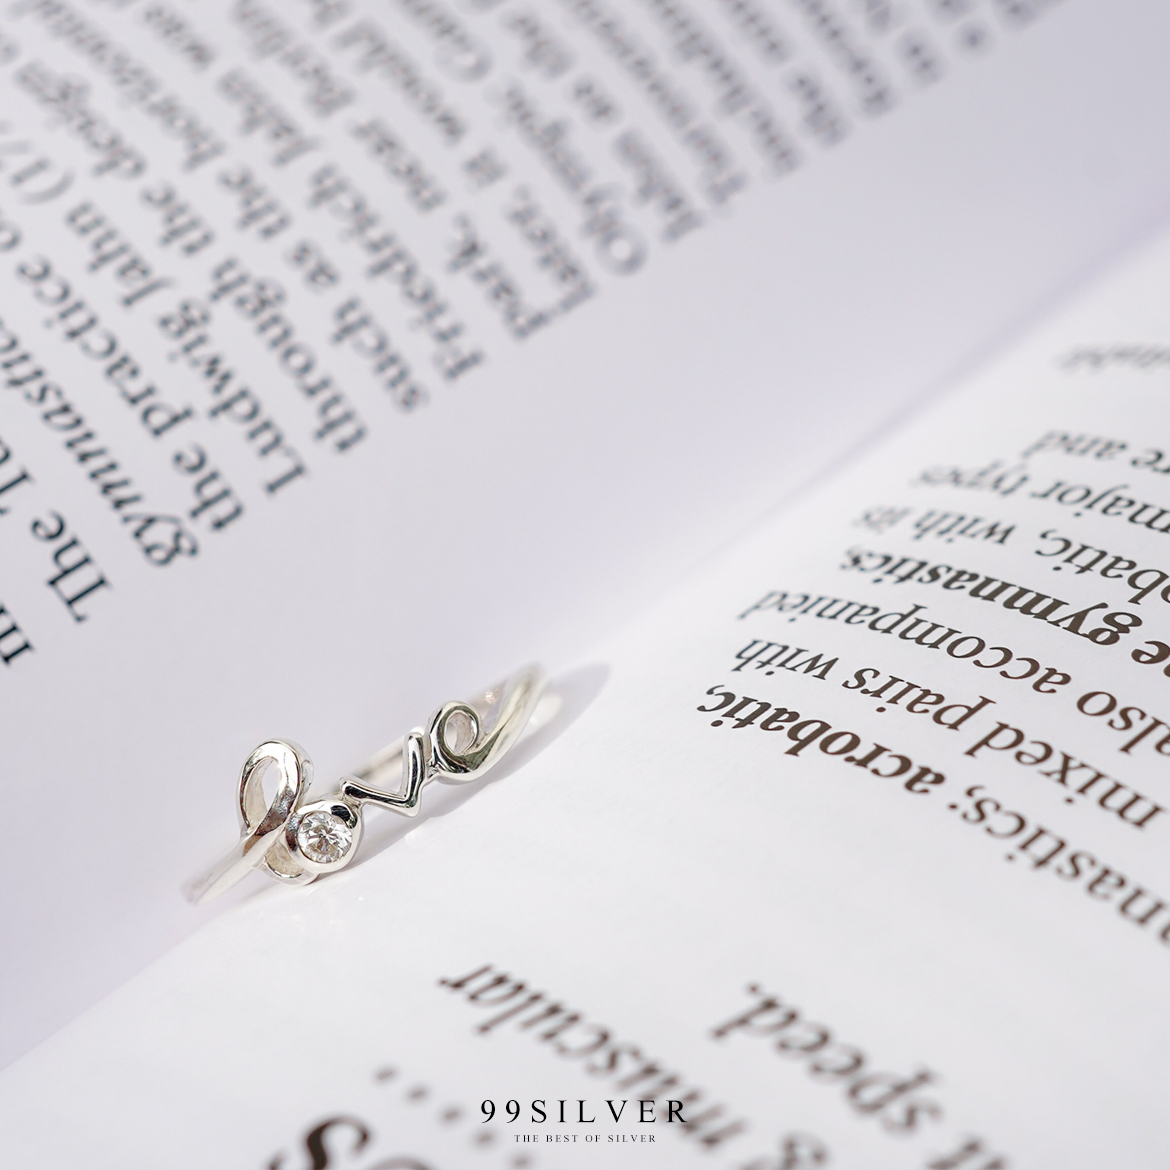 แหวน Love ประดับ Cz Swiss แท้ 1 เม็ด ตัวเรือนเงินแท้ดัดเป็นอักษรสวยงาม